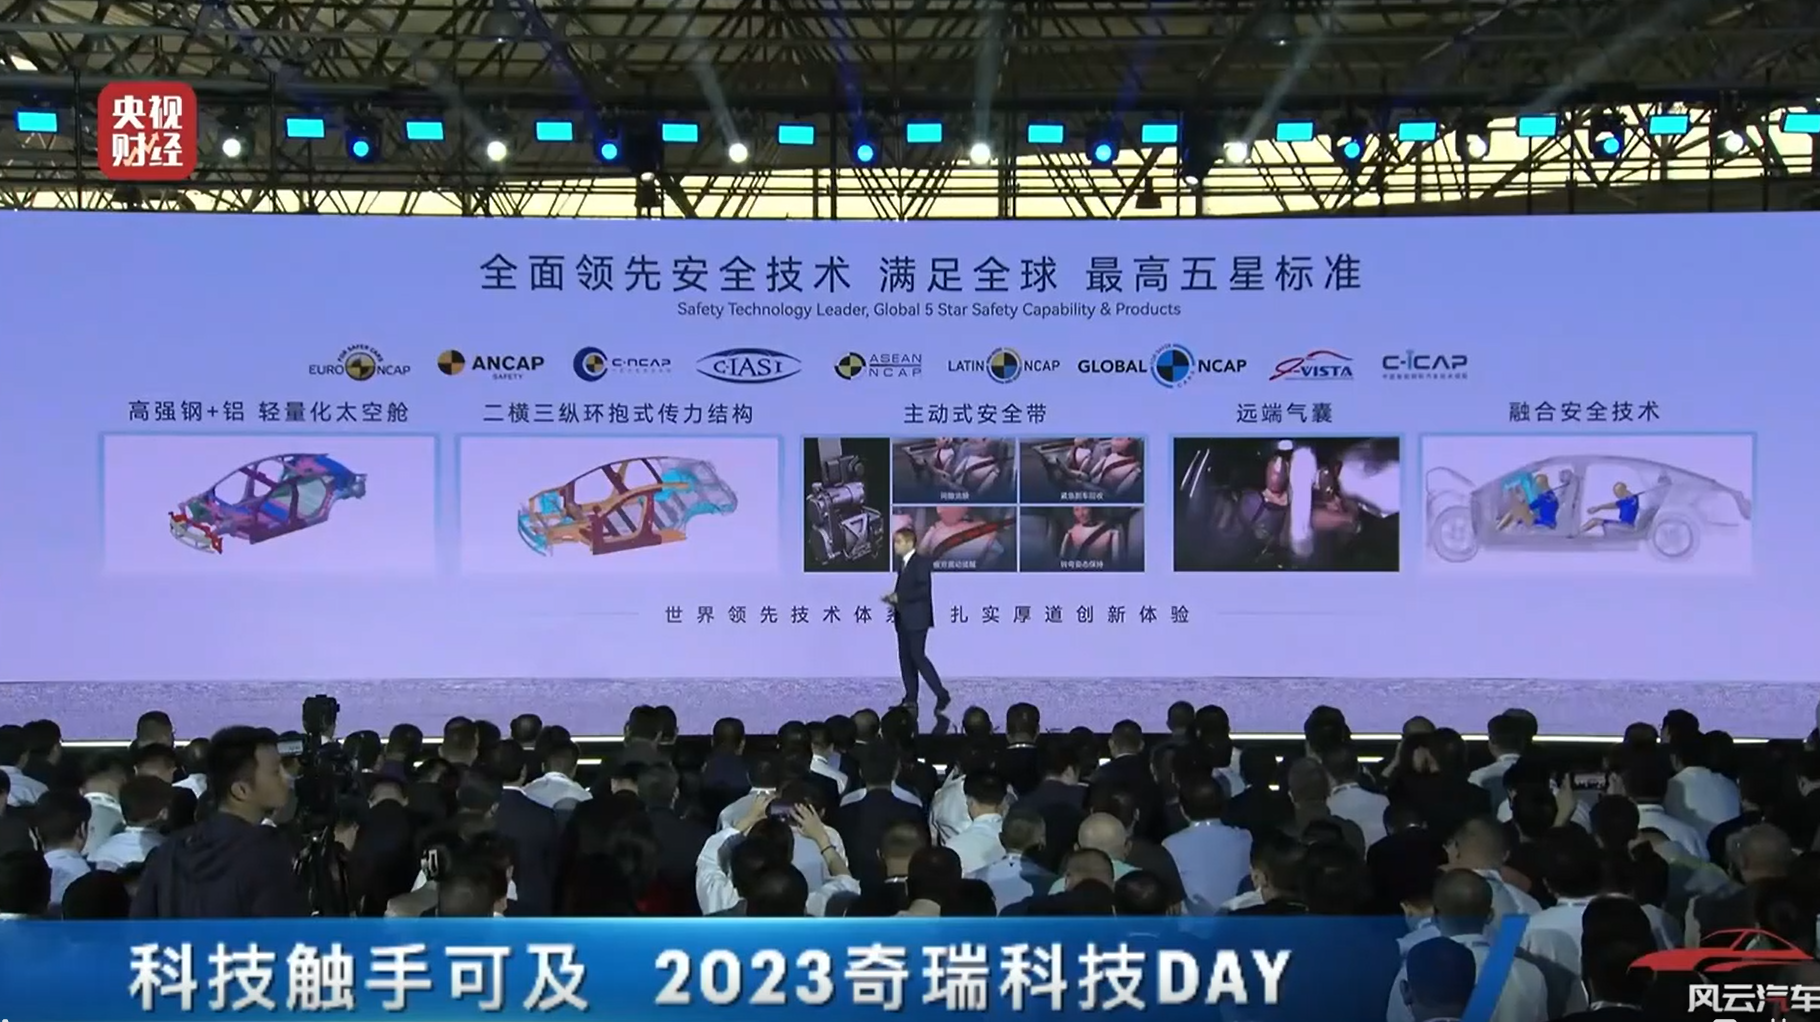 2023奇瑞科技日 瑶光2025多项技术成果落地